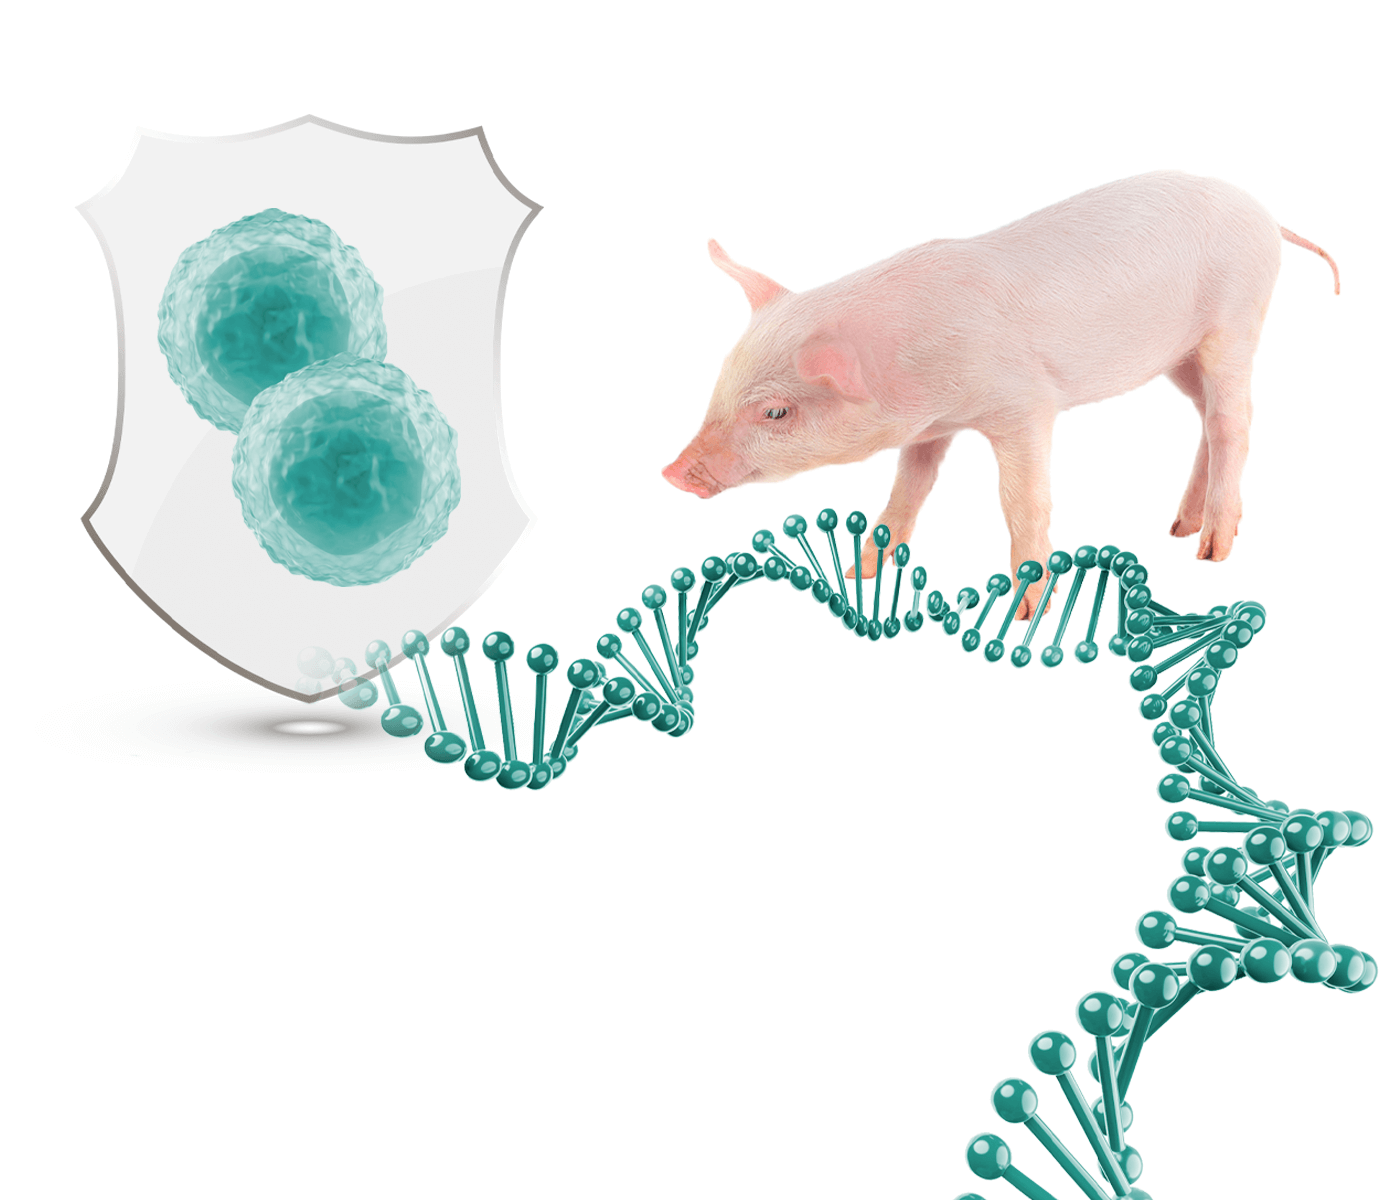 Identificación de marcadores genéticos de células linfocitarias para mejorar la robustez y resistencia a enfermedades en cerdos